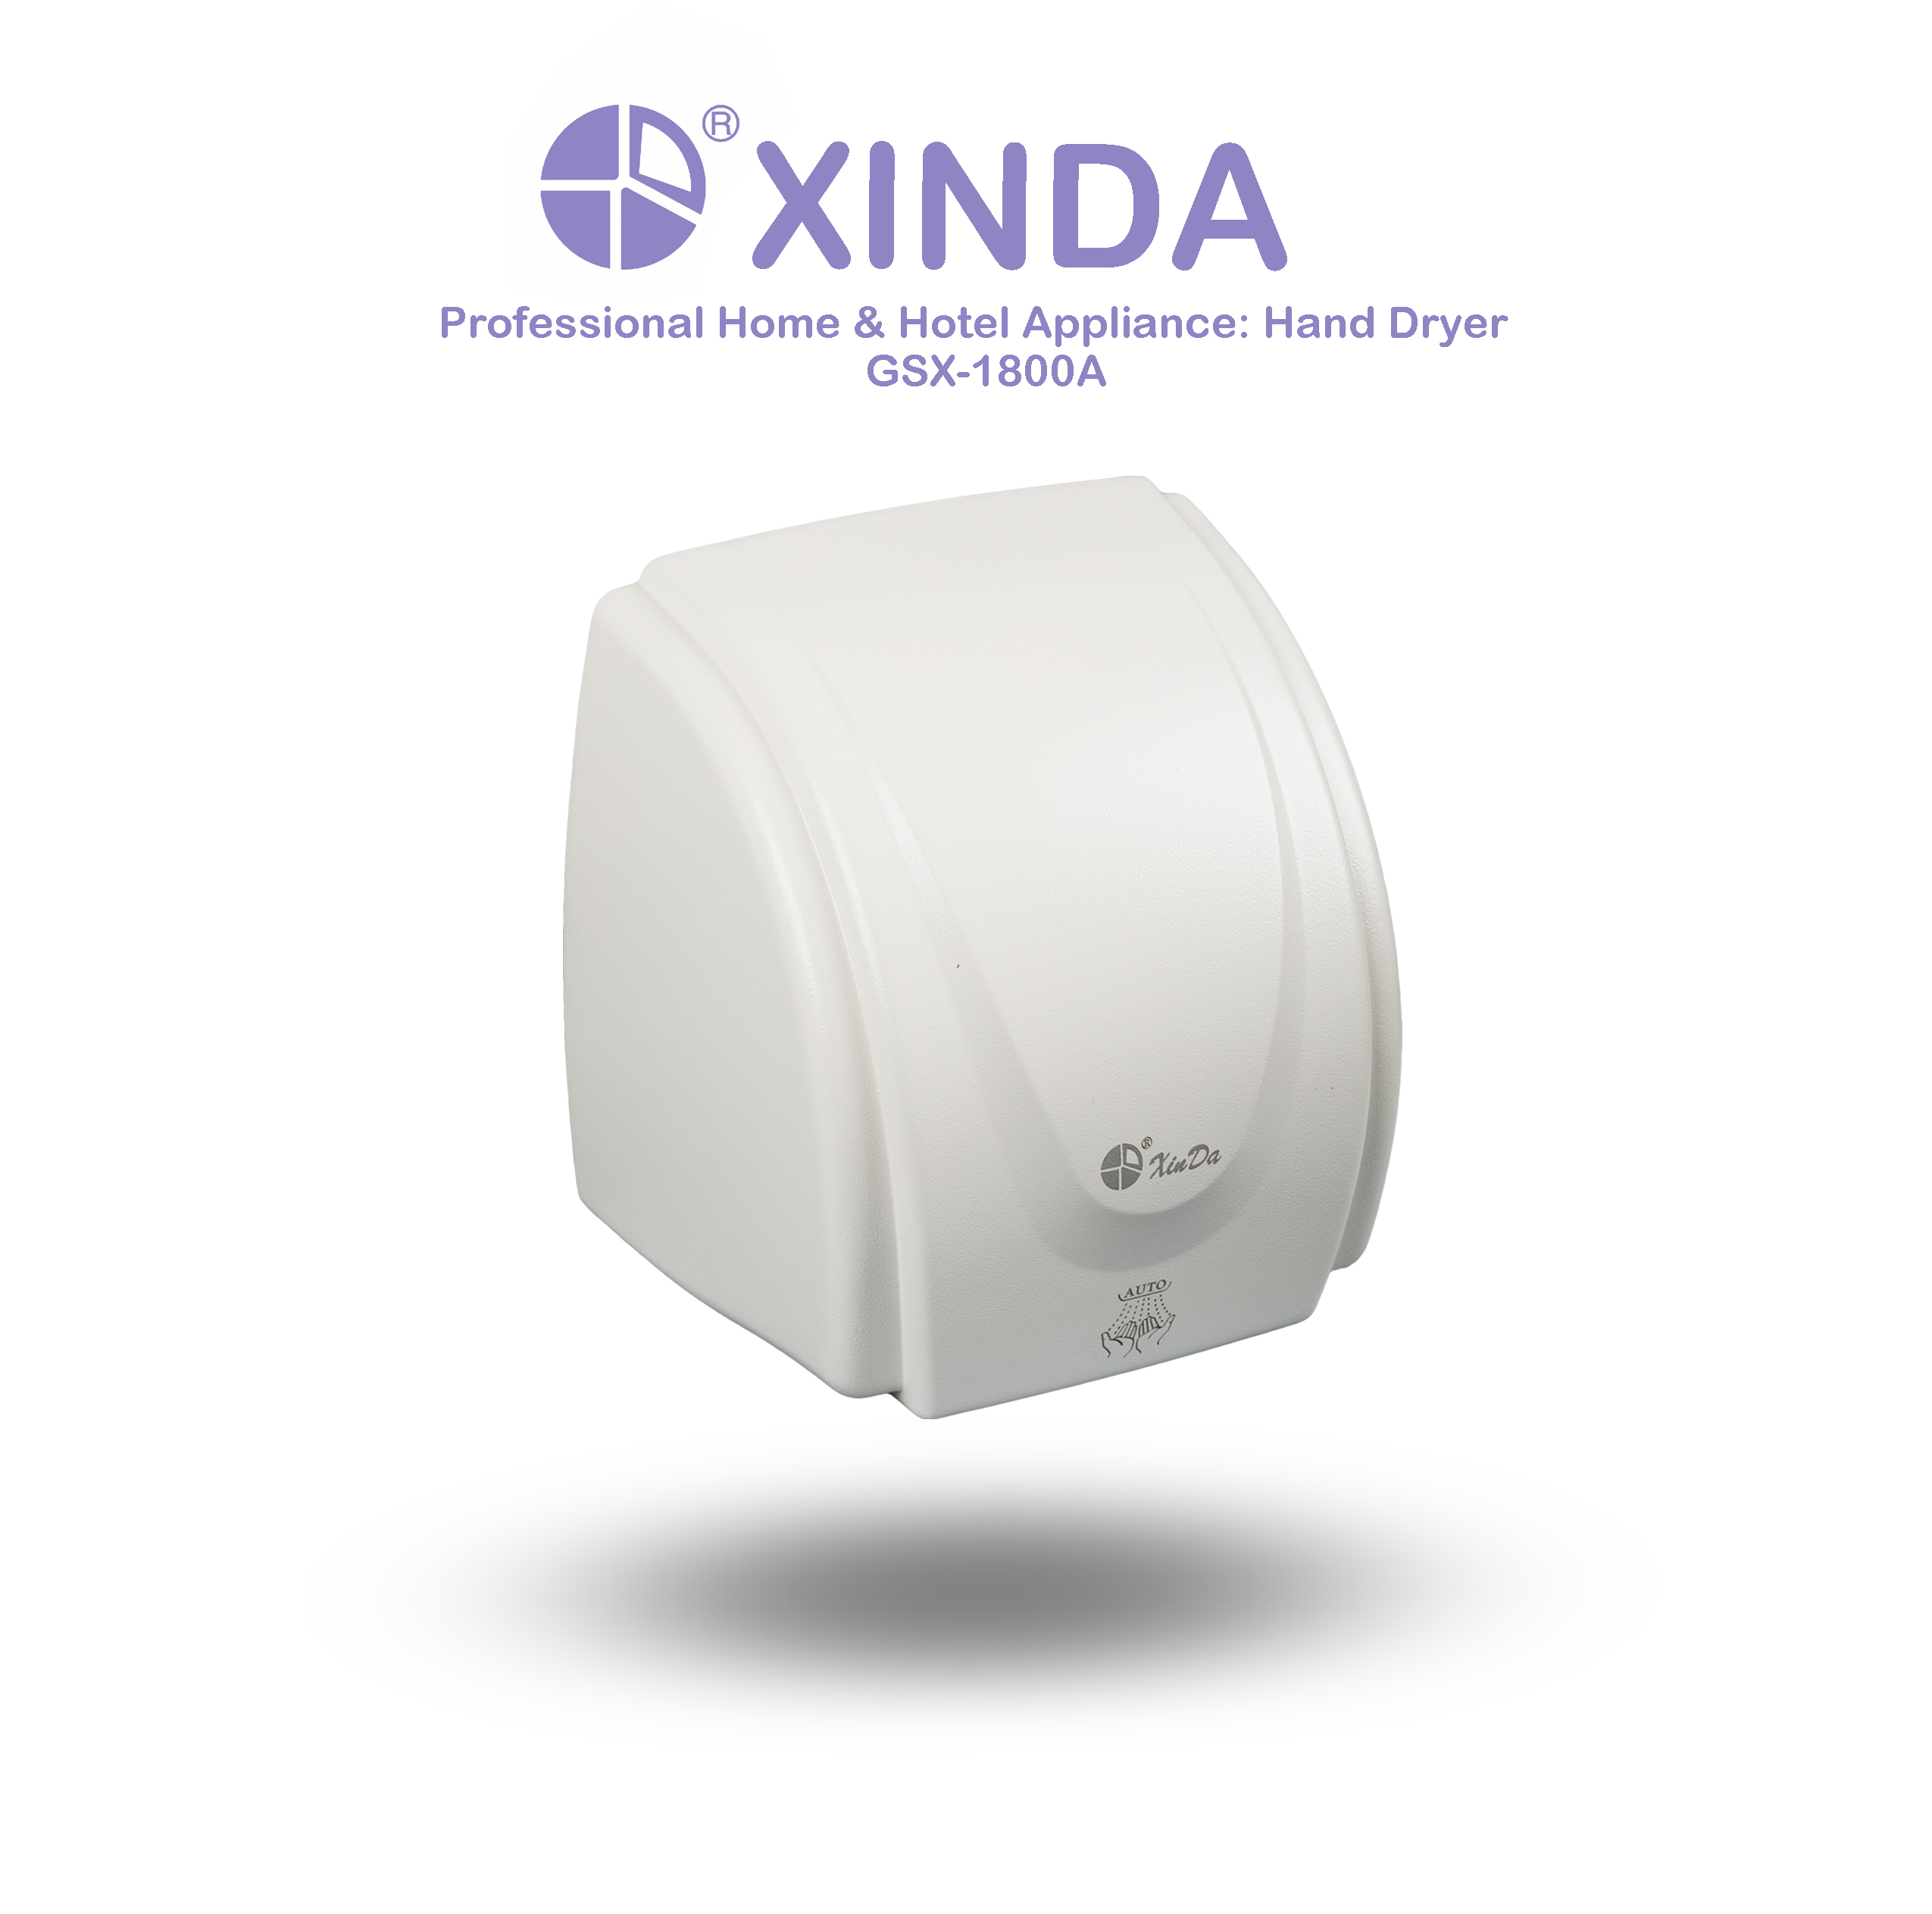 Le XinDa GSX1800A Hotel capteur automatique sèche-mains professionnel corps en plastique blanc automatique mural